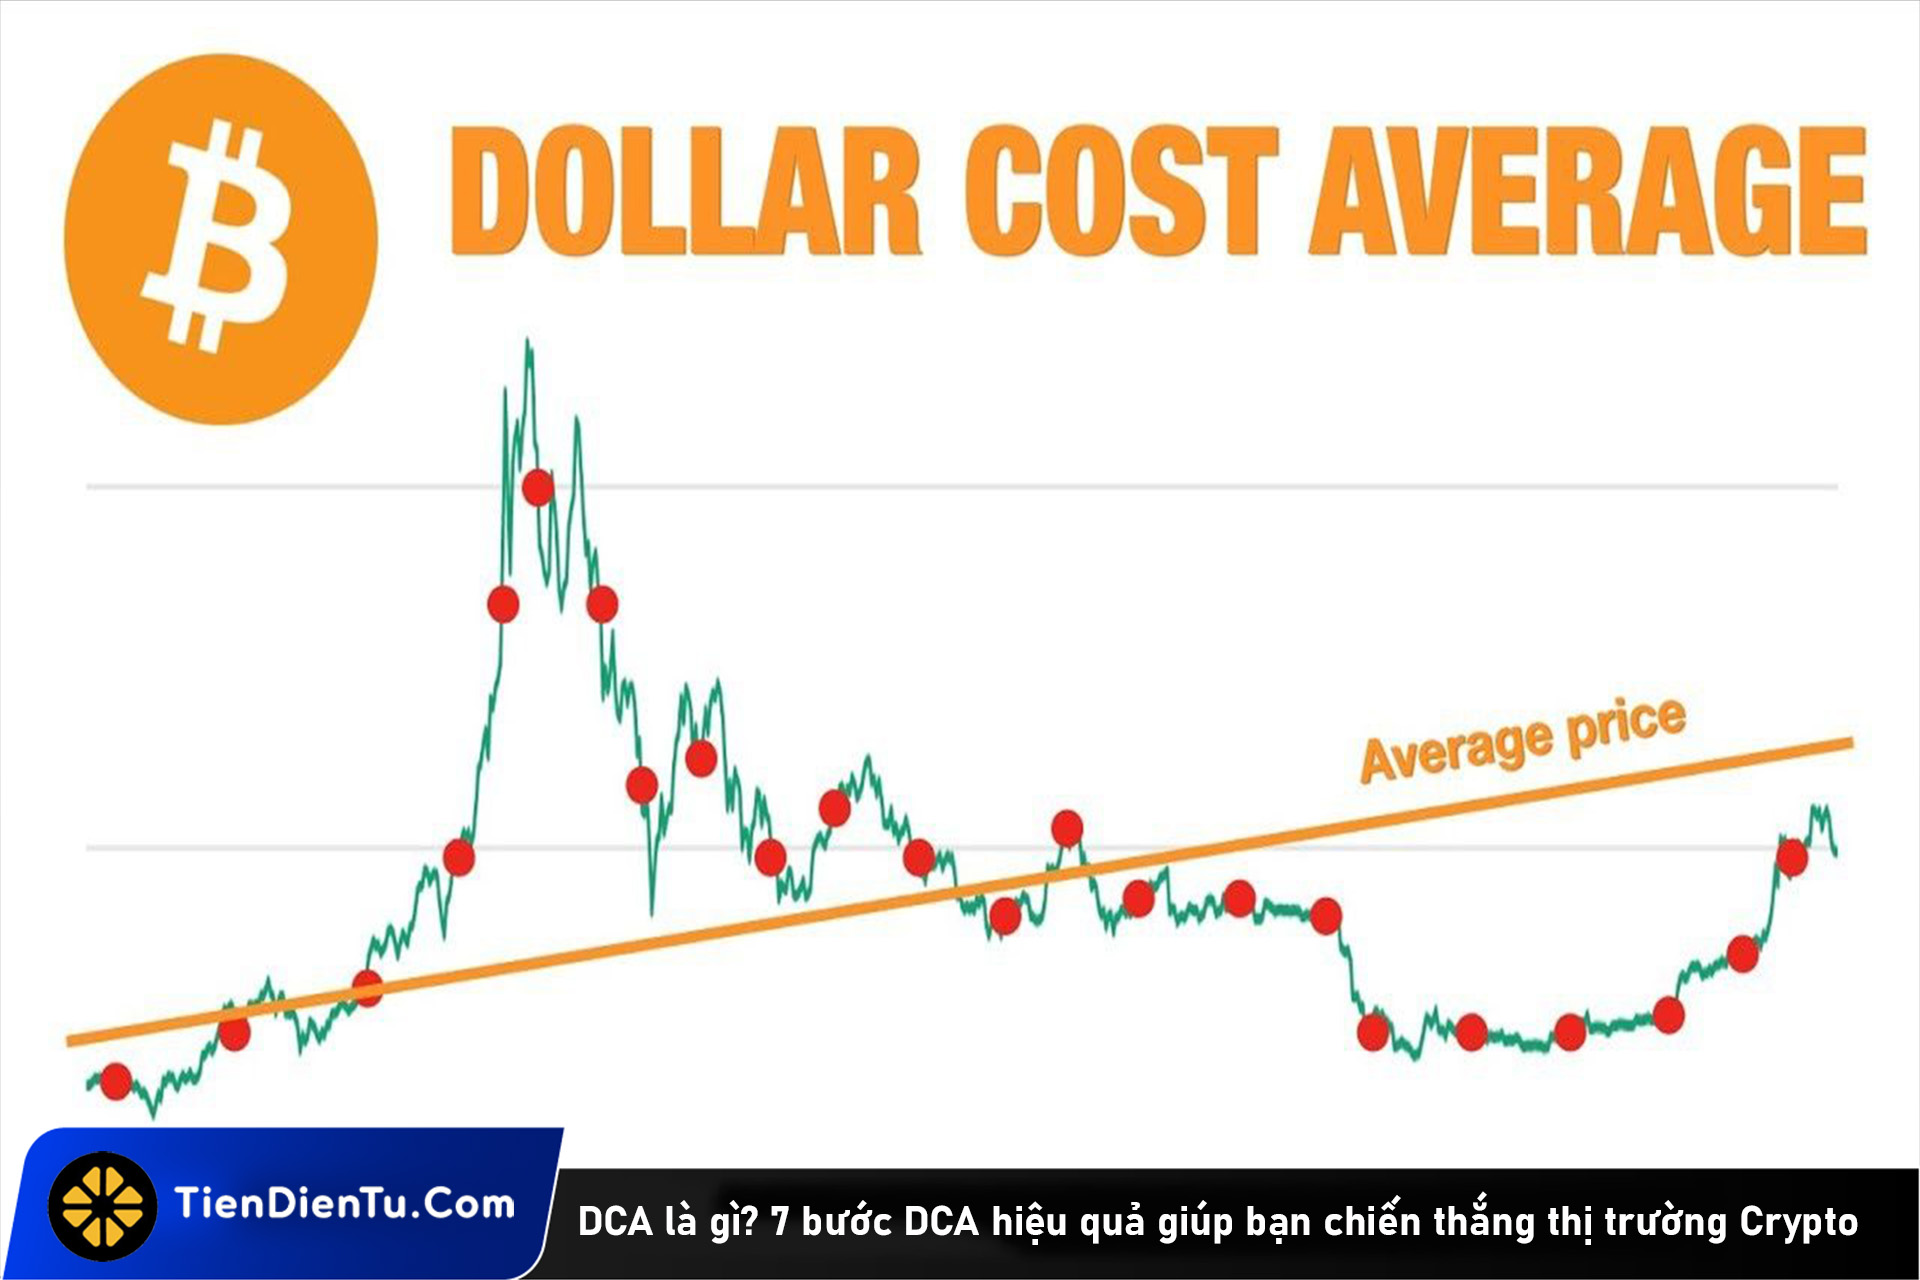 DCA là gì? 7 bước DCA hiệu quả giúp bạn chiến thắng thị trường Crypto